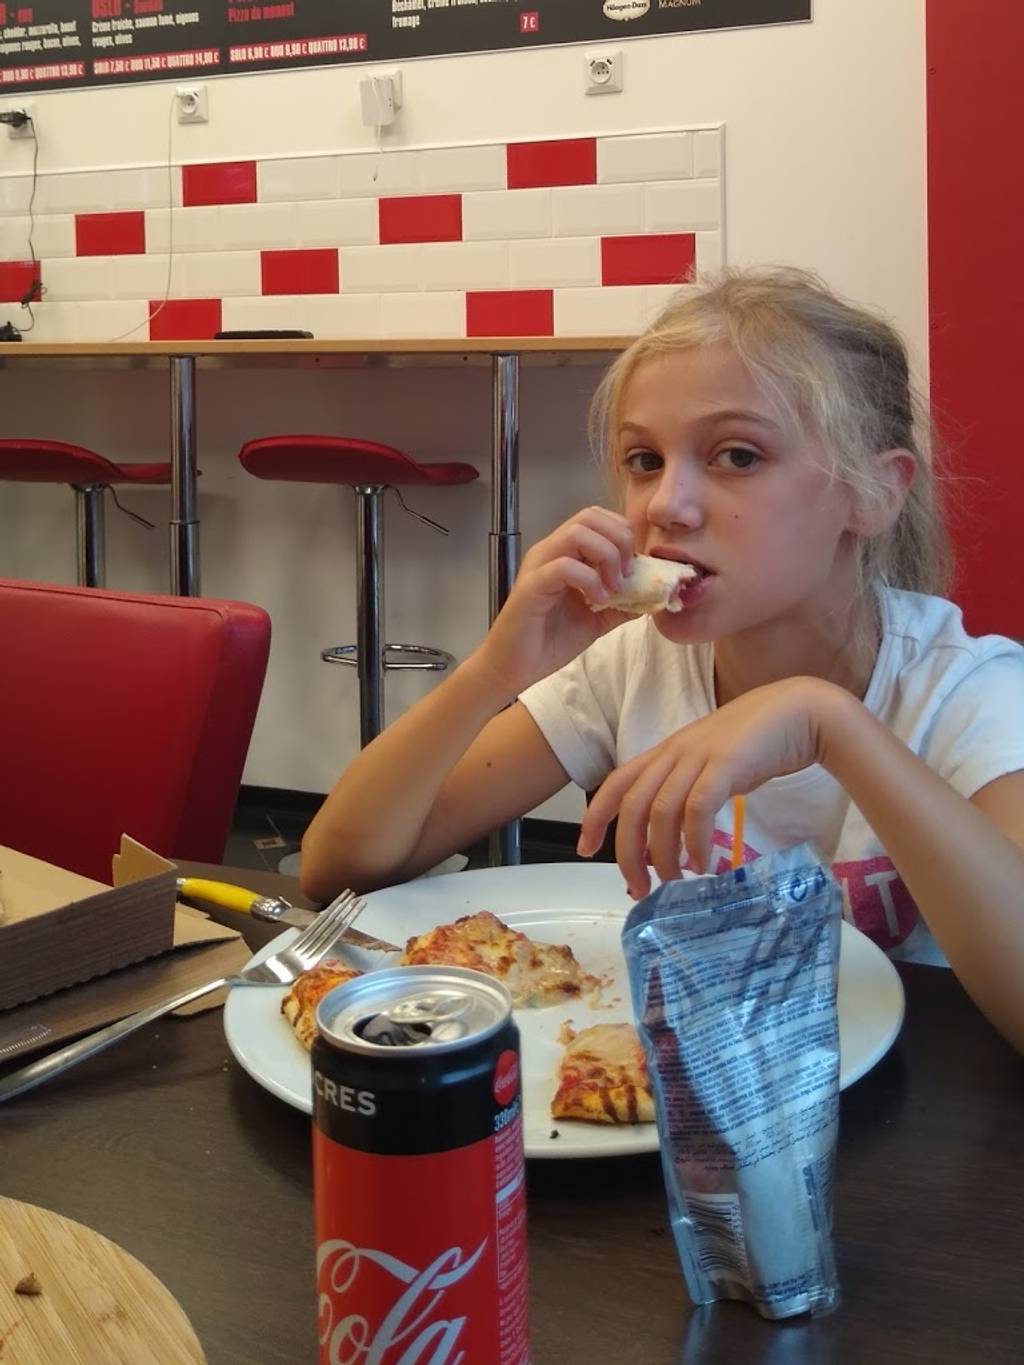 LA PIZZA DE PAPEL Douai - Fast food Junk food Eating Coca-cola Snack